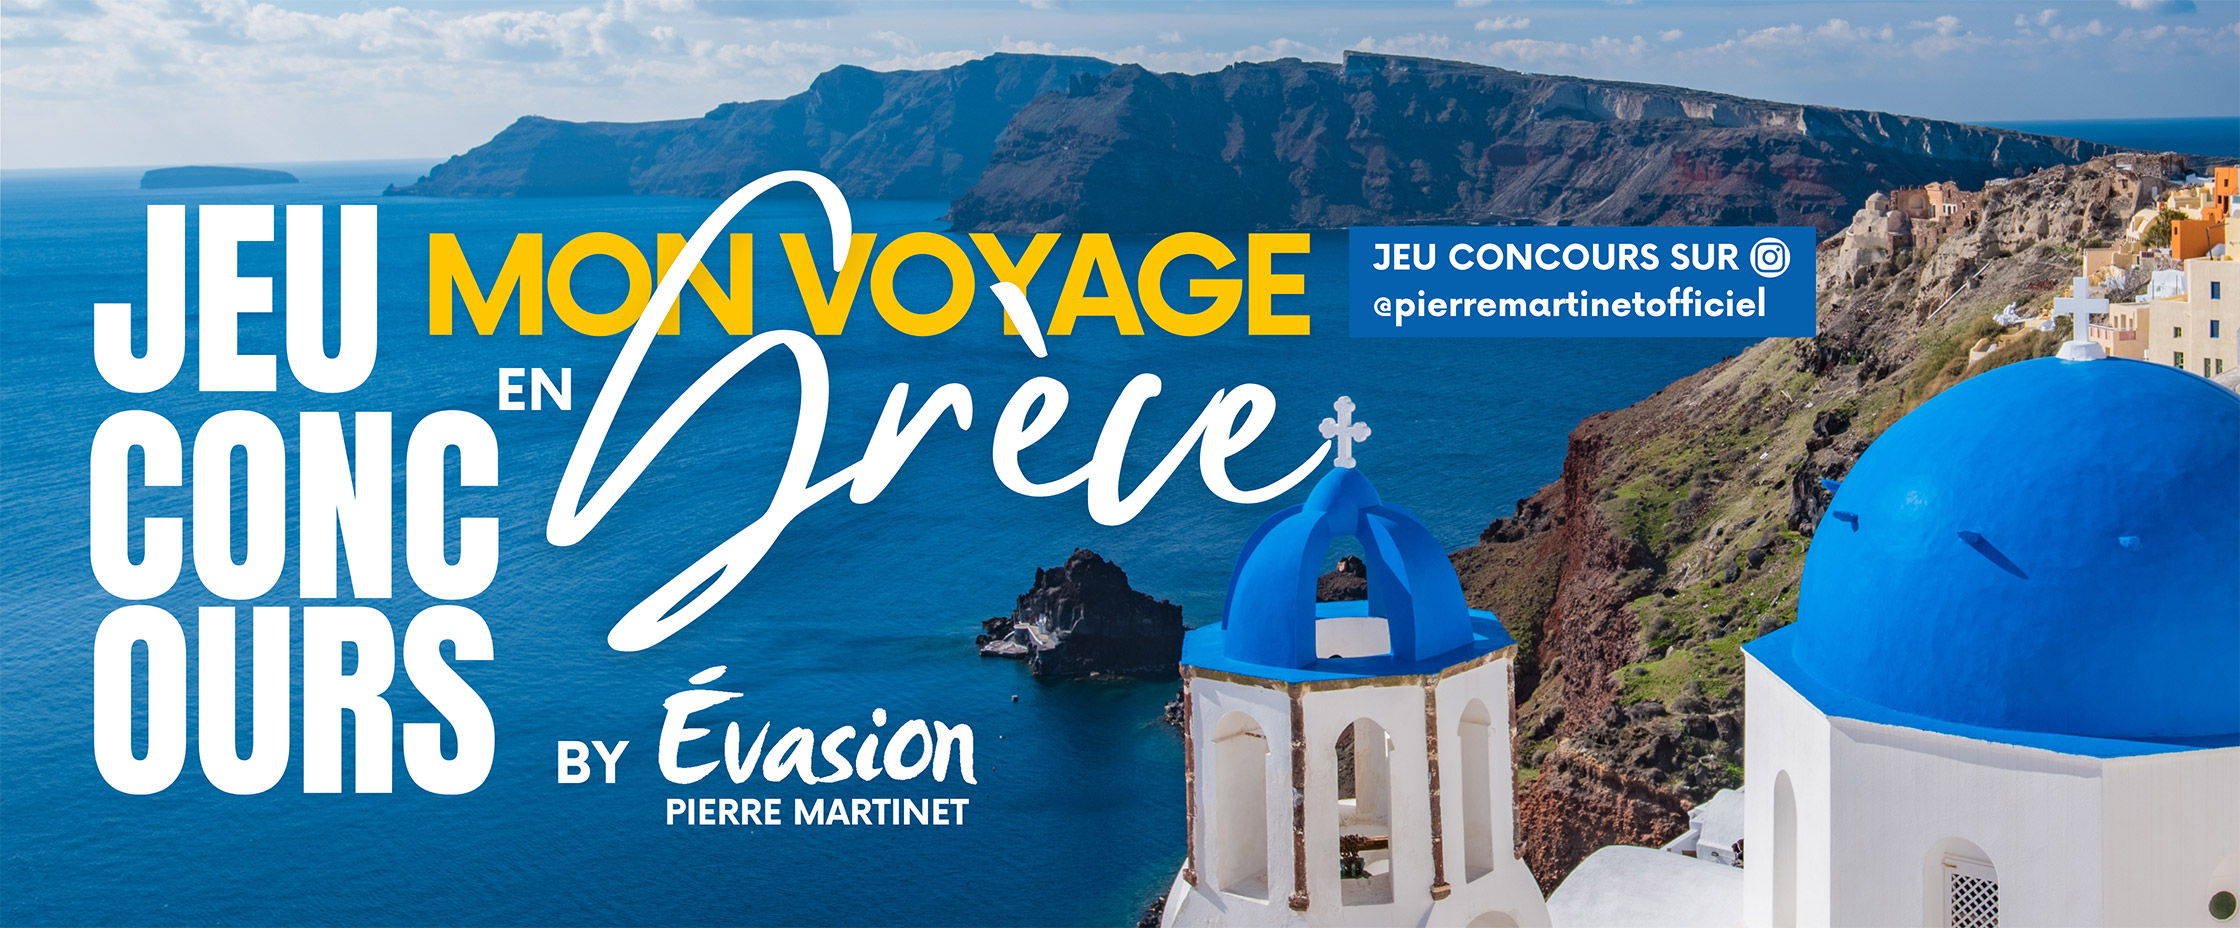 Mon voyage en Grèce by Evasion Pierre Martinet - Jeu concours